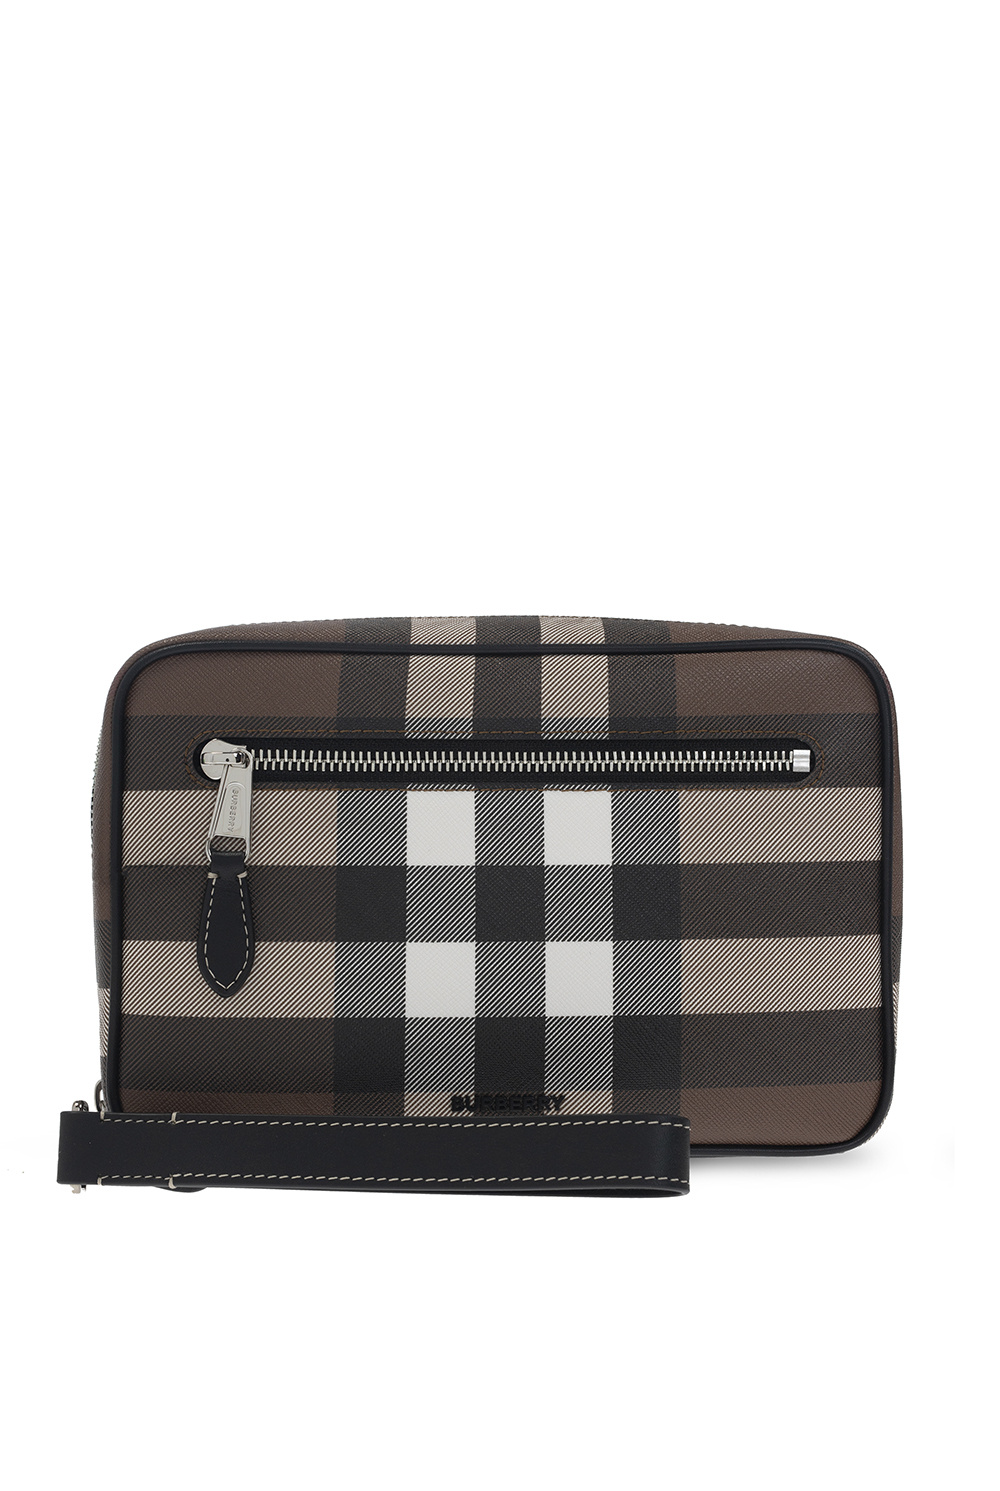 Burberry ‘Finster’ handbag